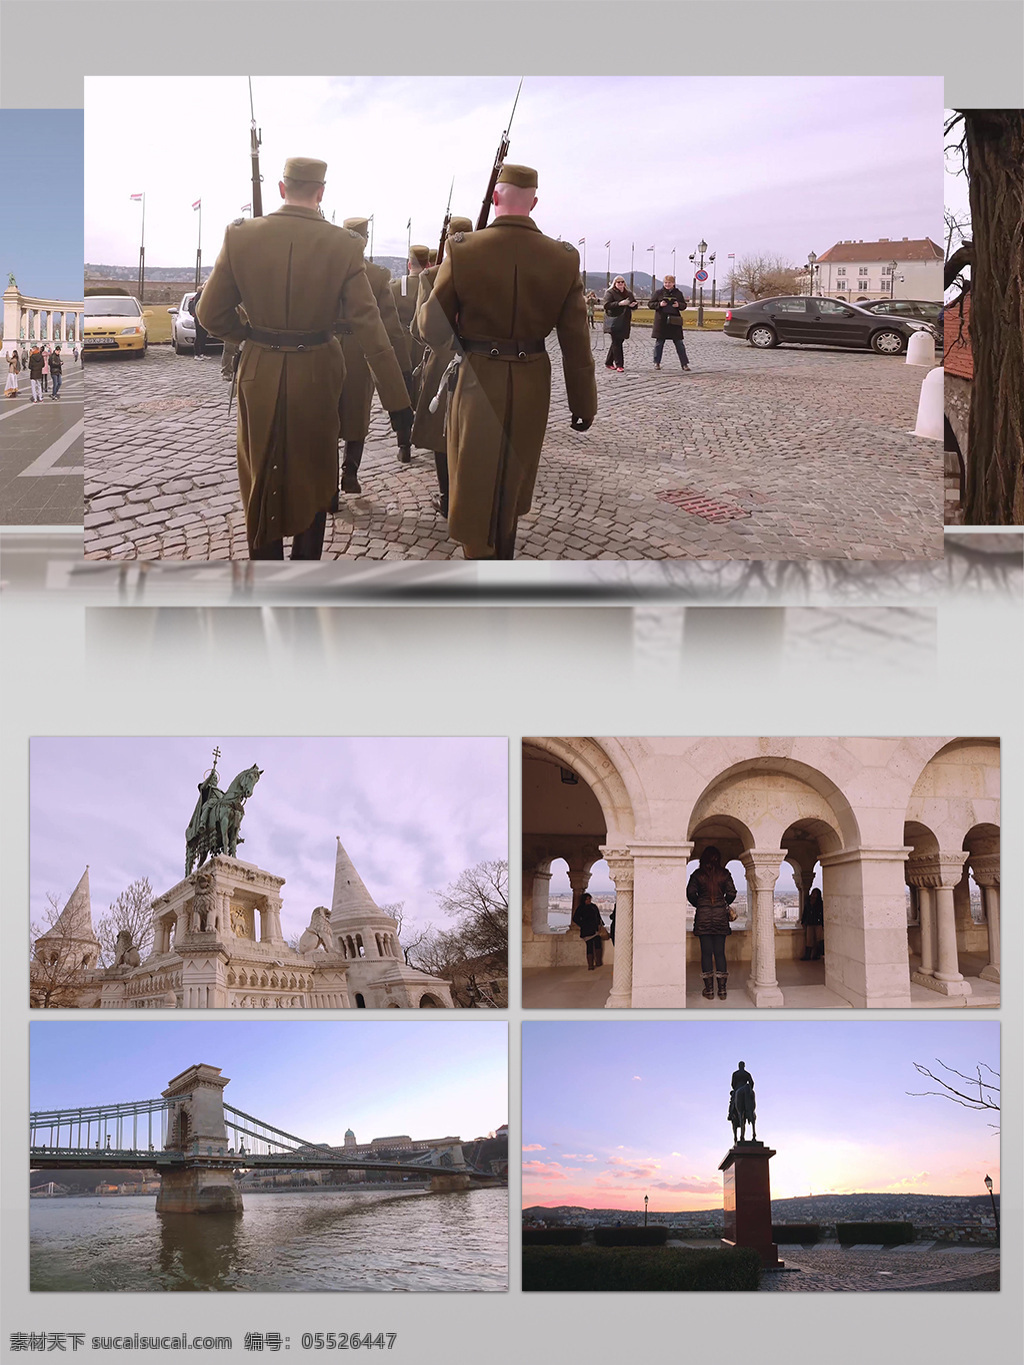 匈牙利 首都 布达佩斯 城市 景观 人文 风光 建筑 雕塑 广场 文化 展示 城市景观 地标